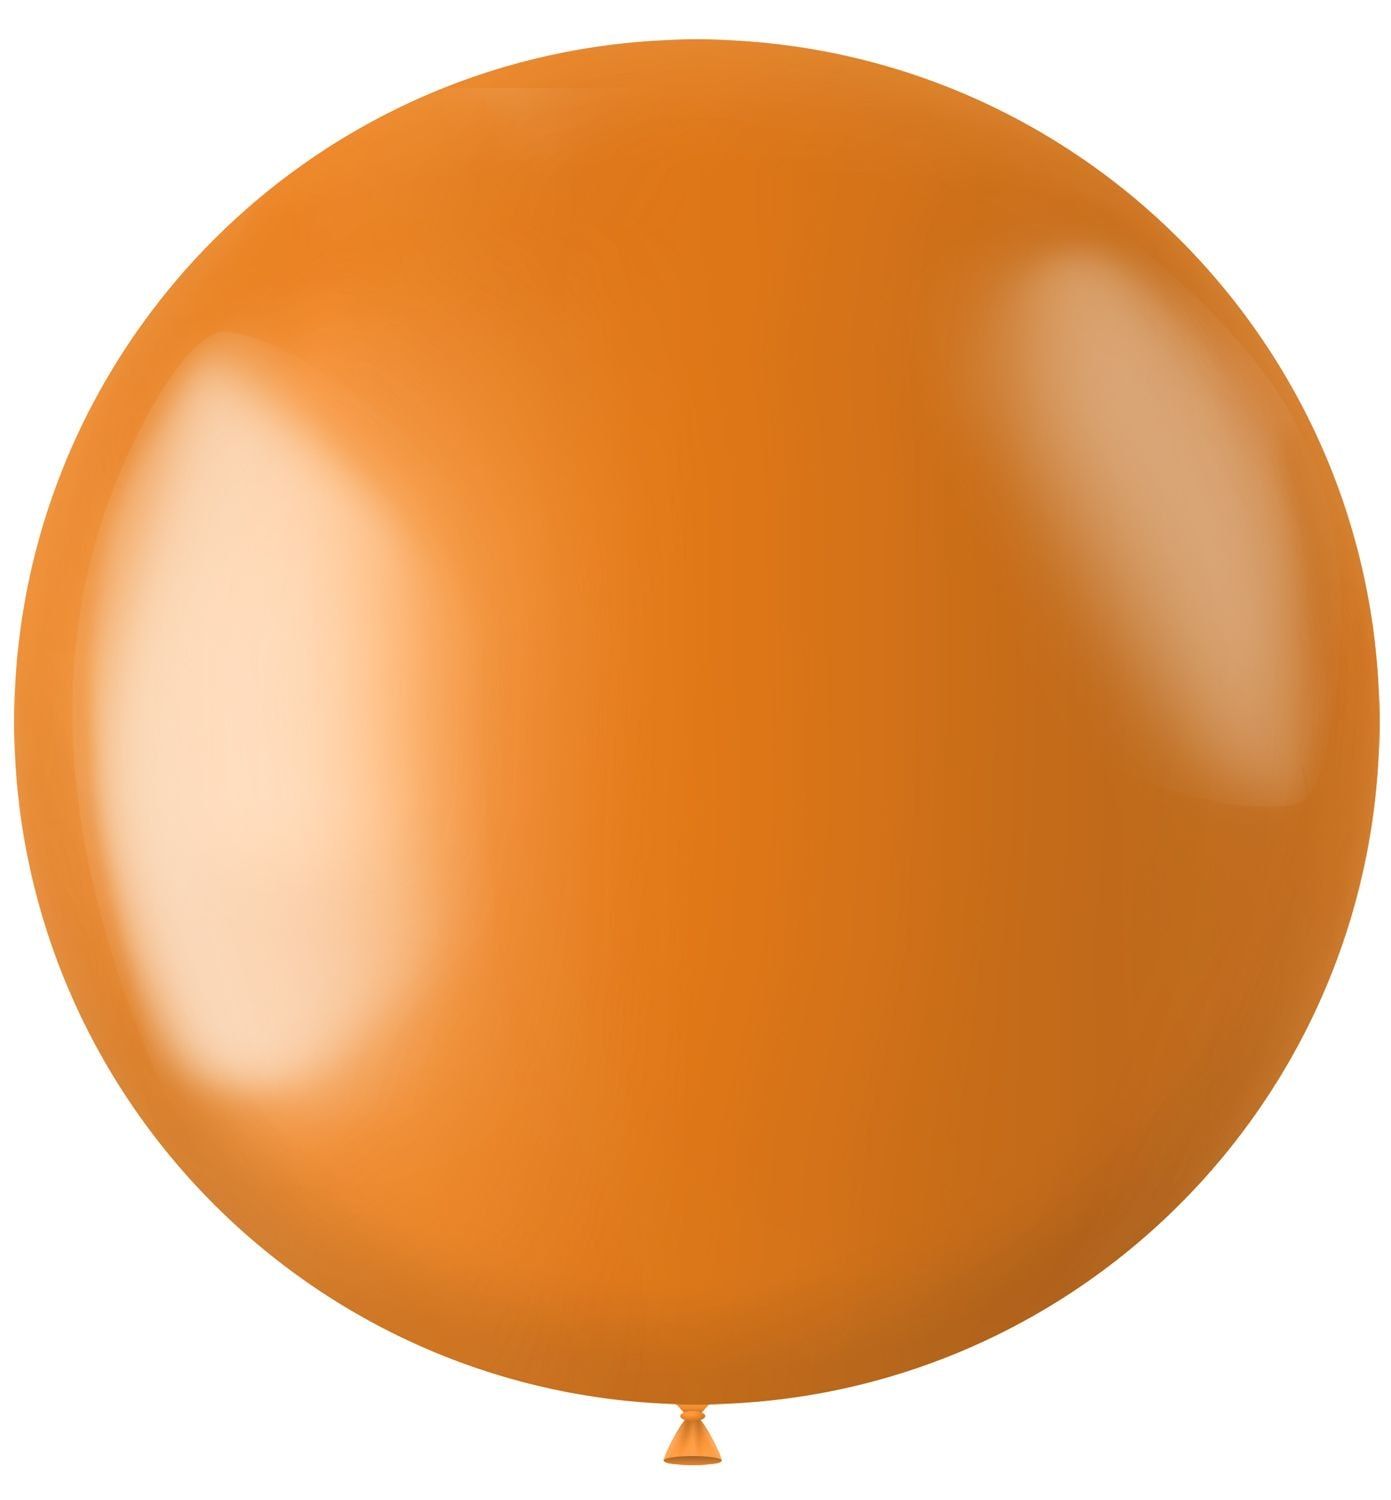 XL ballon oranje metallic